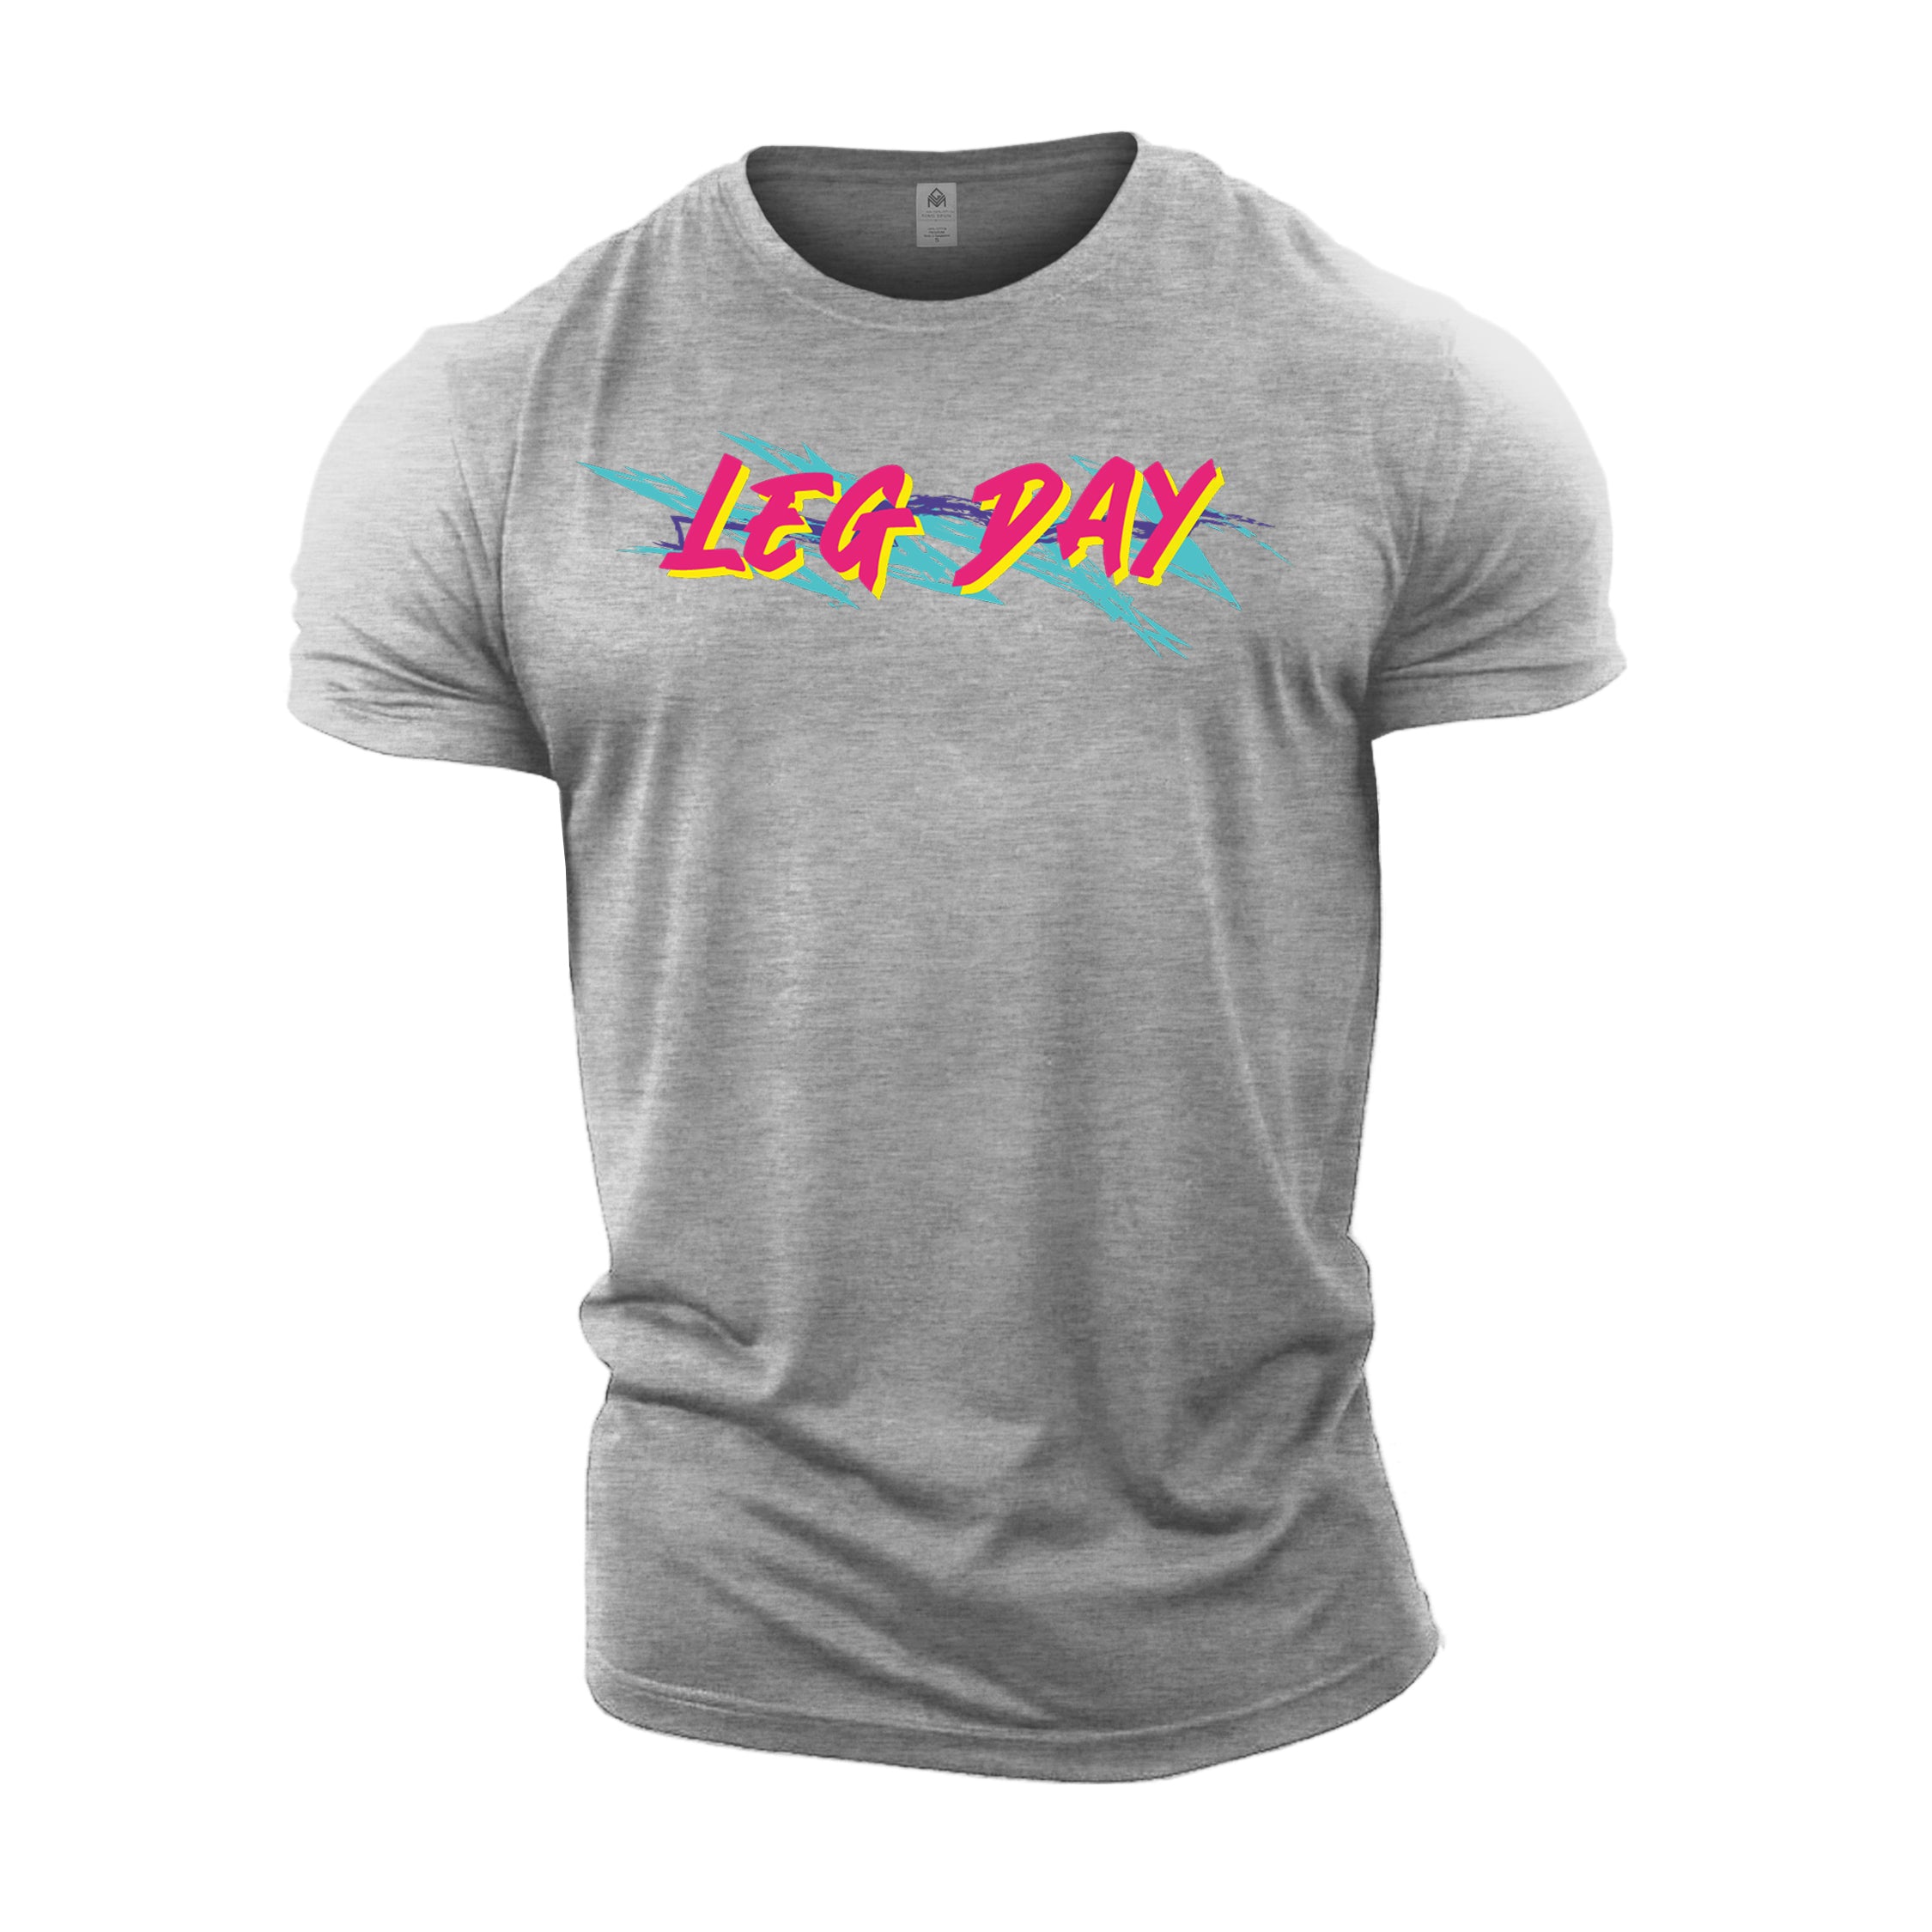 Retro Leg Day - Gym T-Shirt